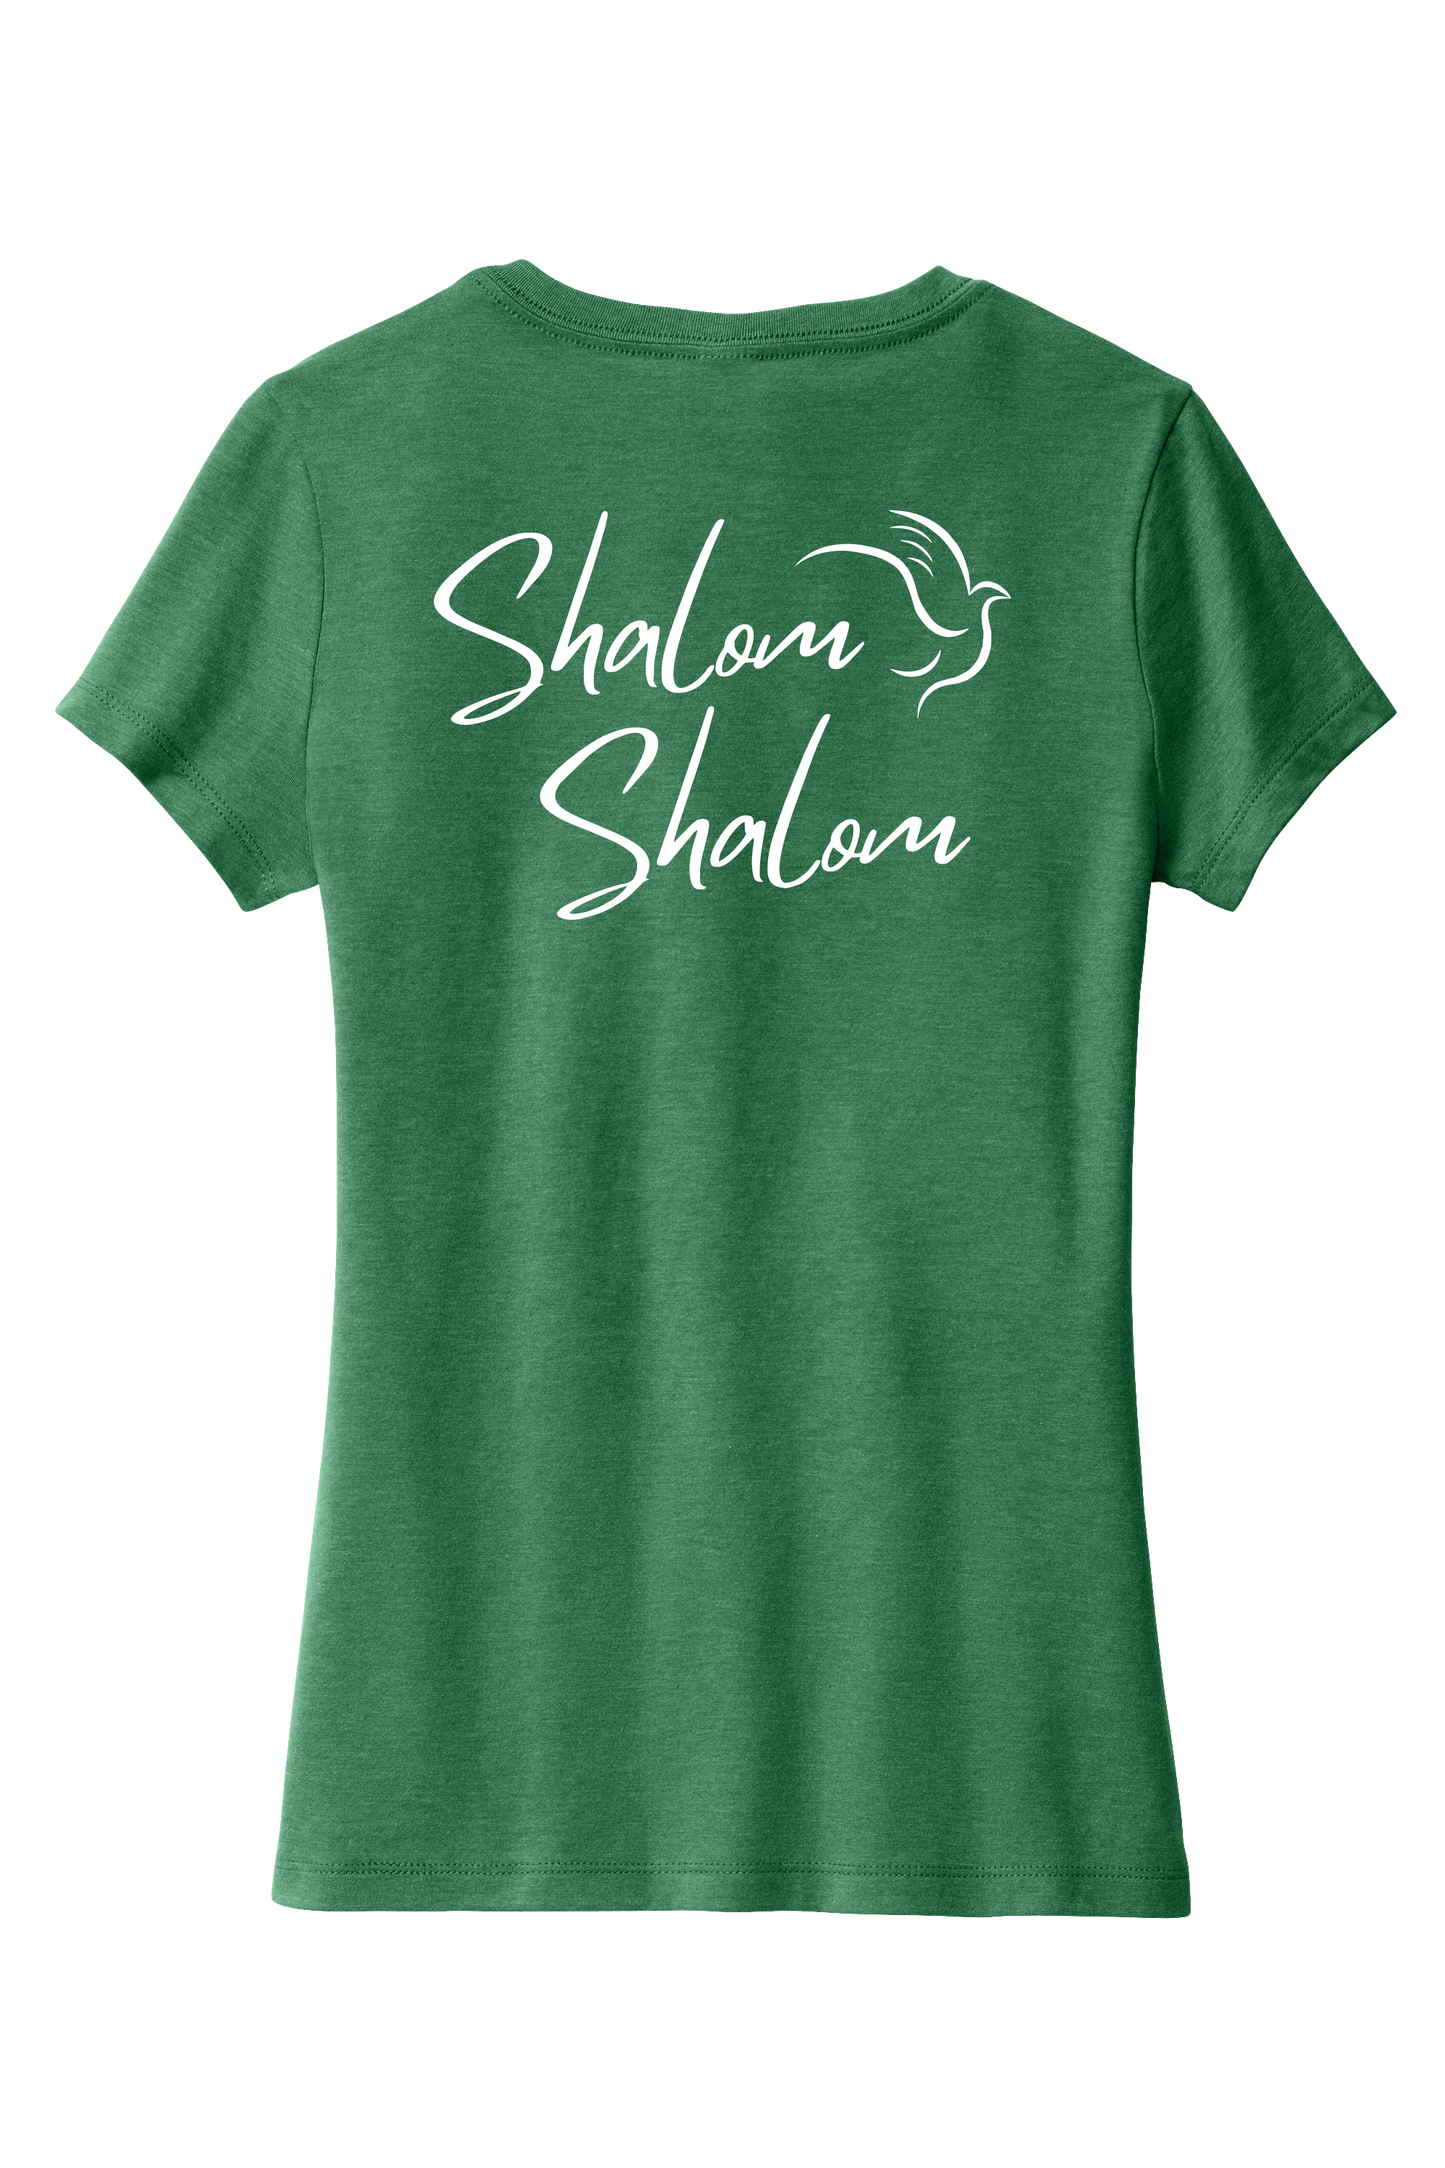 Ladies Shalom - Israel T-shirt